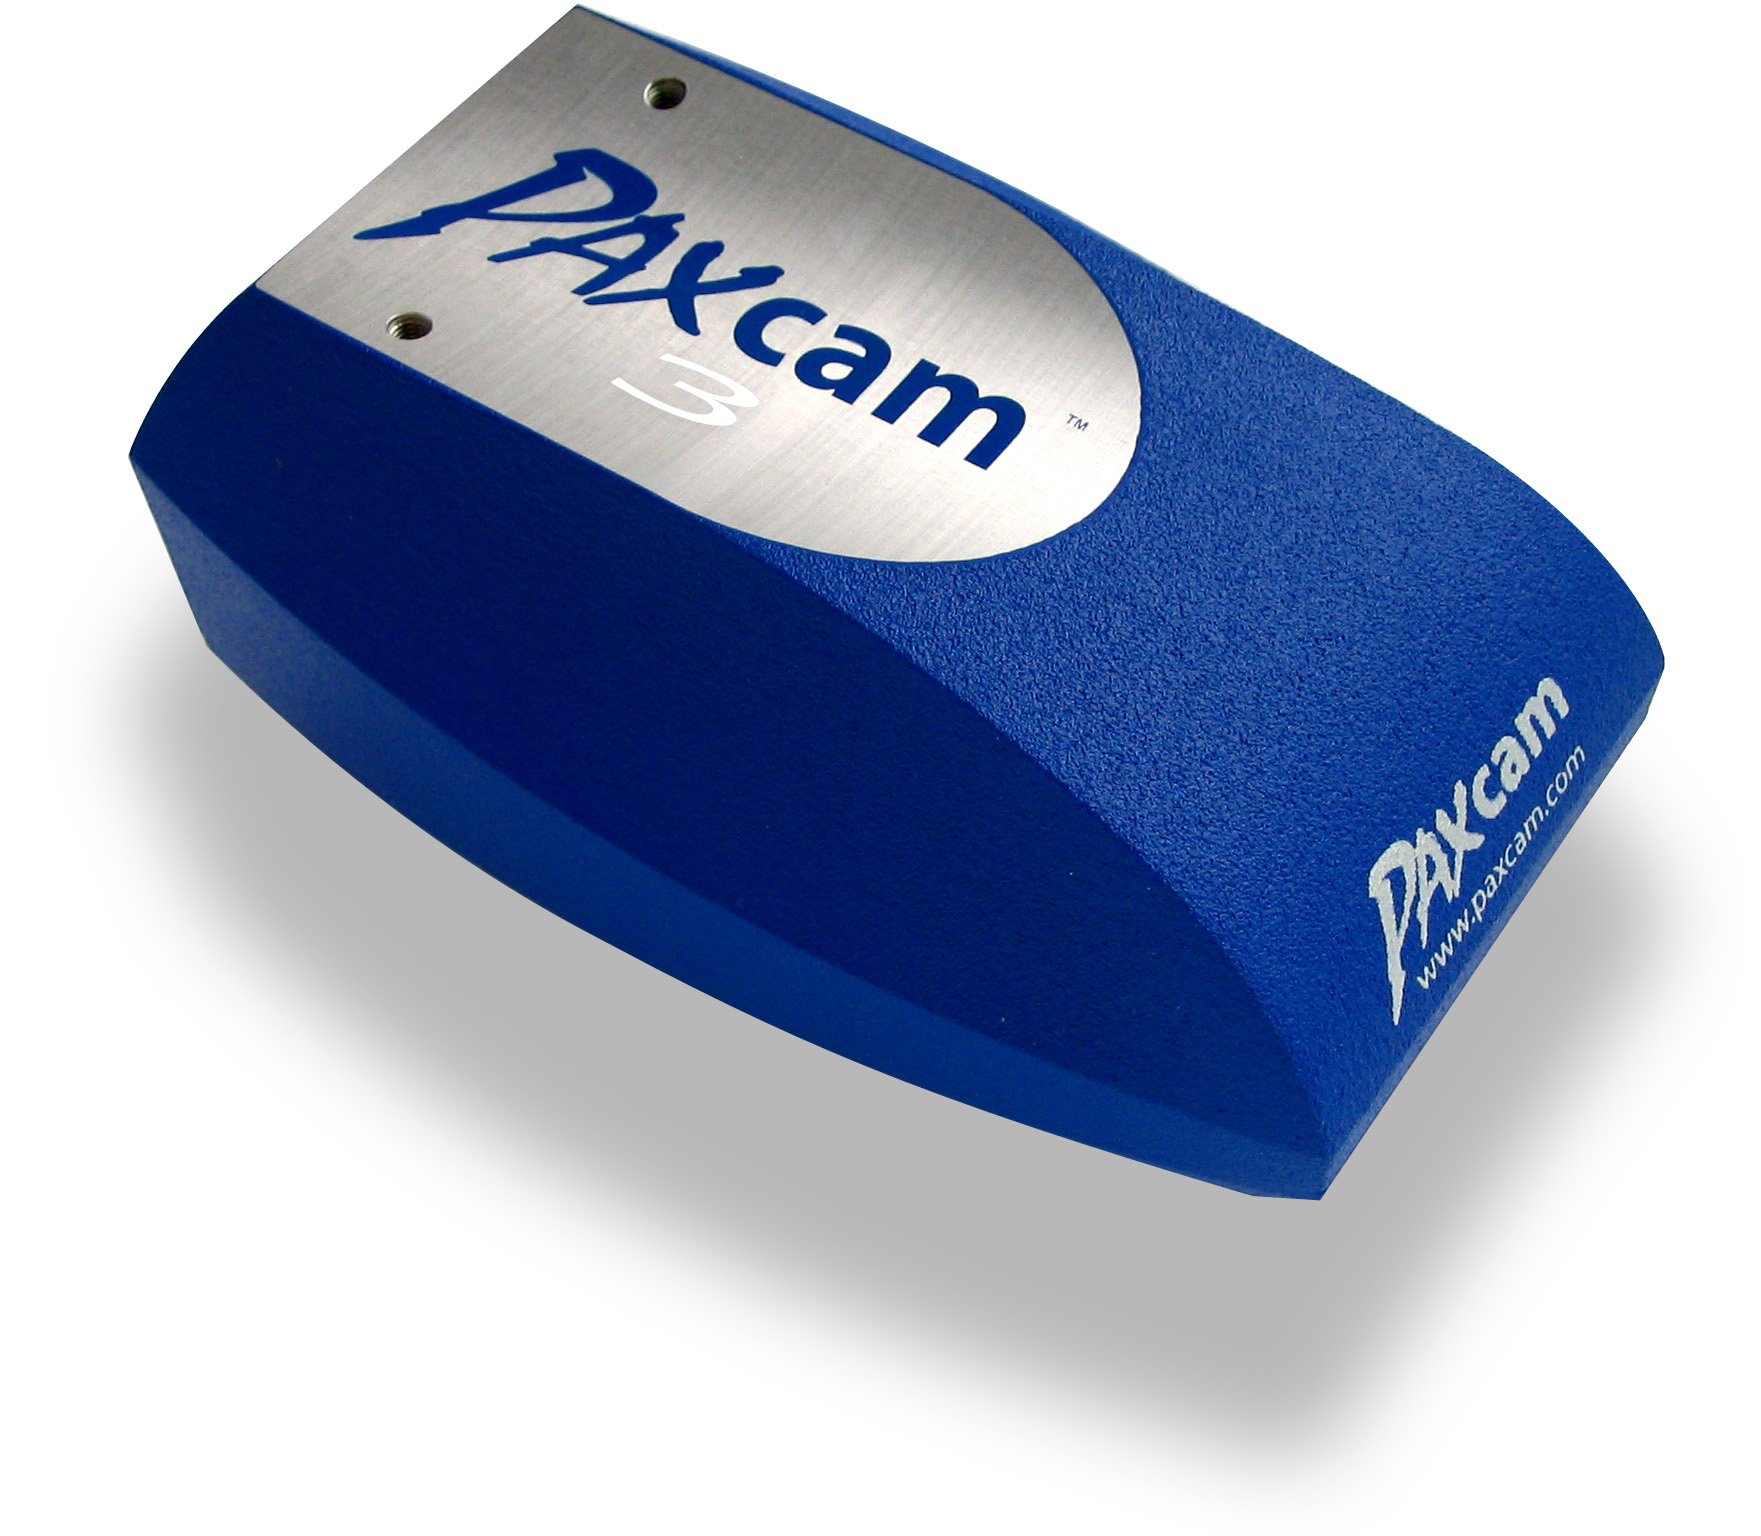 PAXcam Digital Microscope Cameras